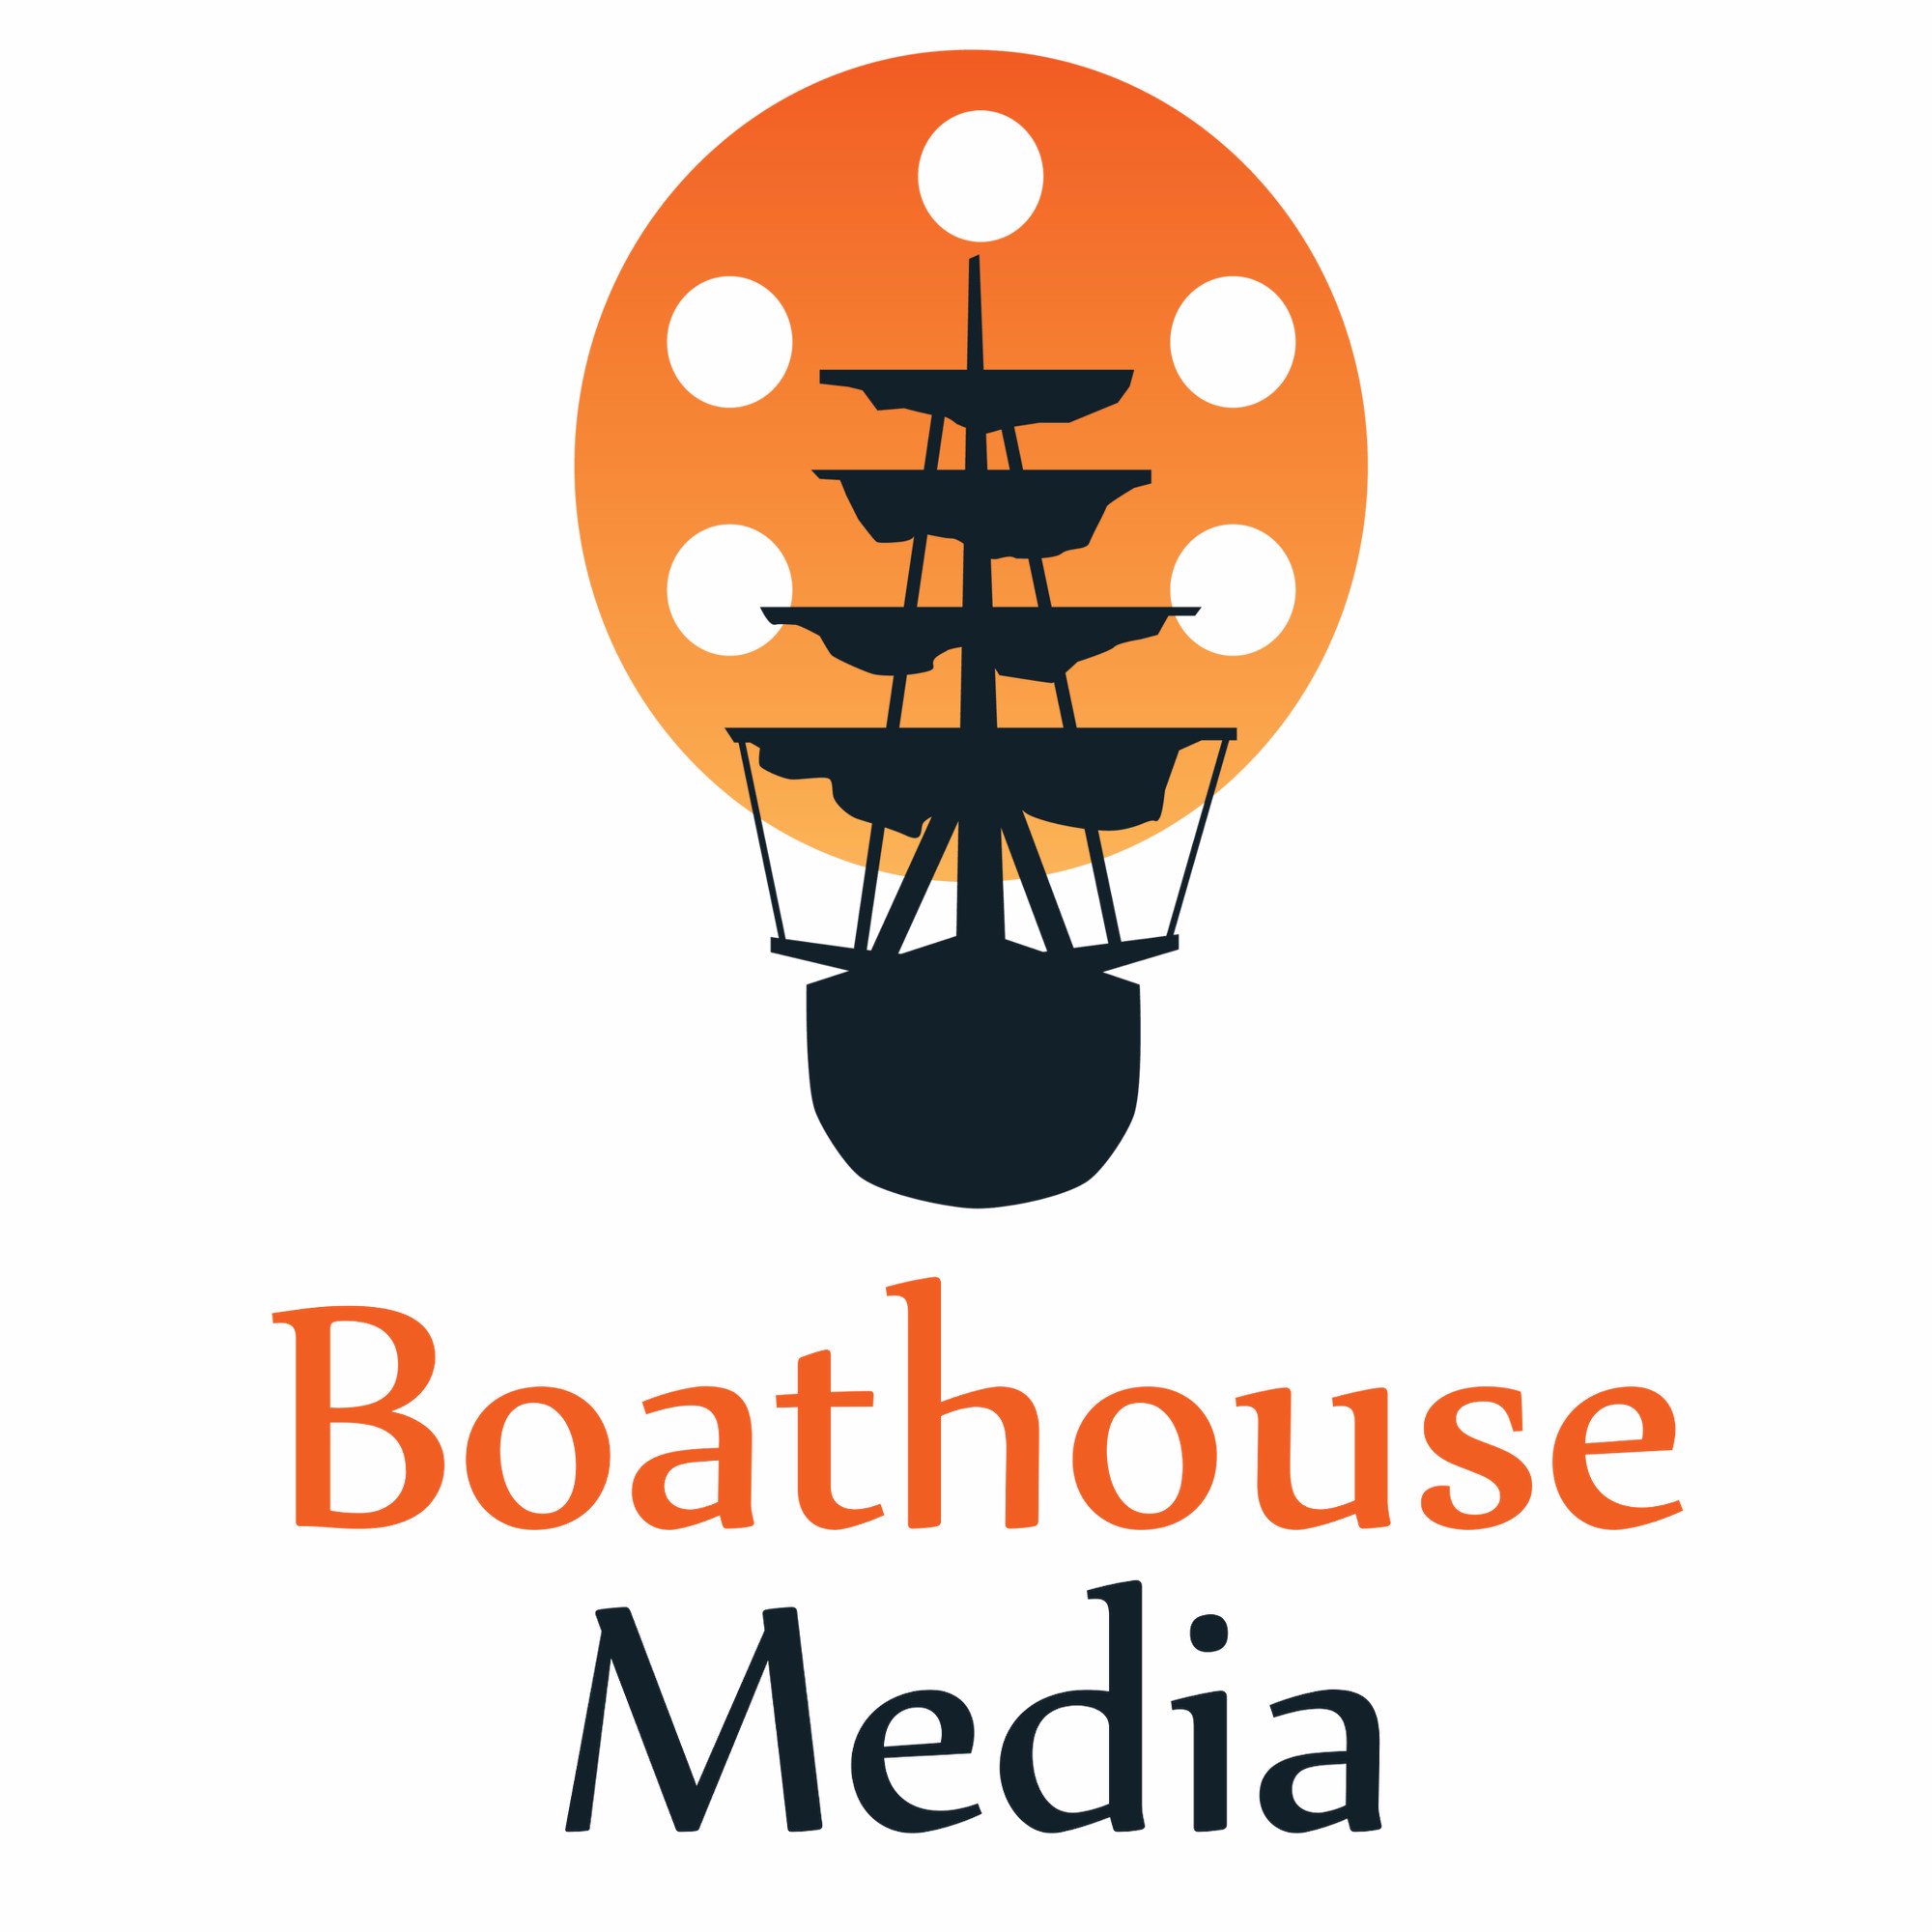 Boathouse Media